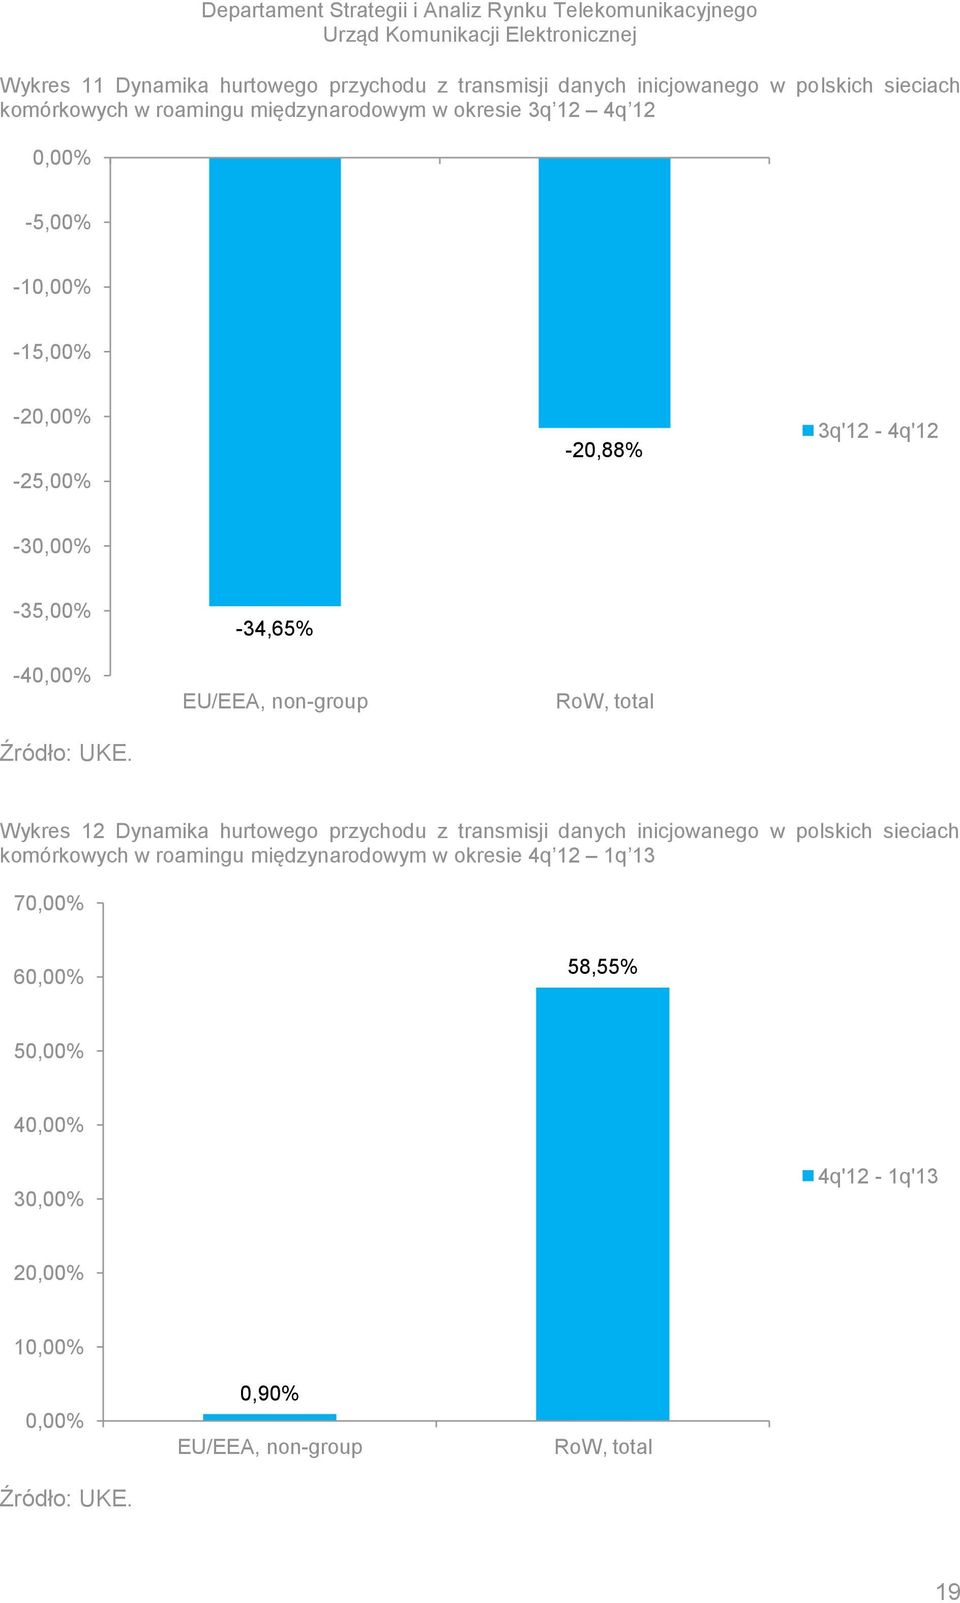 -35,00% -4-34,65%, non-group RoW, total Wykres 12 Dynamika hurtowego przychodu z transmisji danych inicjowanego w polskich